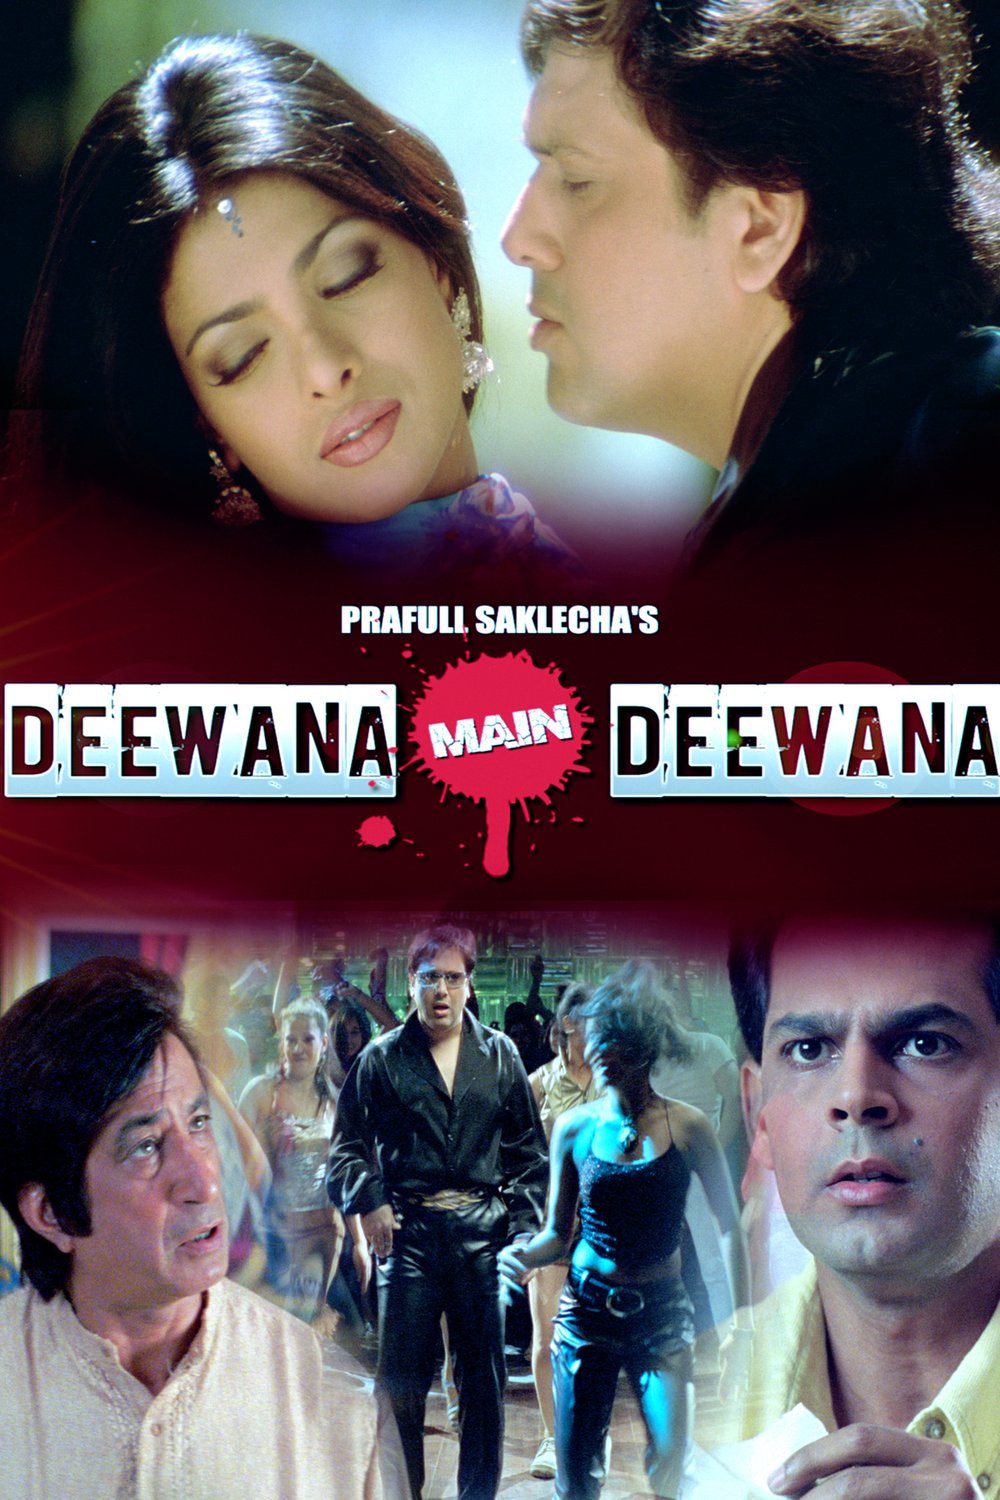 Hindi poster of the movie Deewana Main Deewana